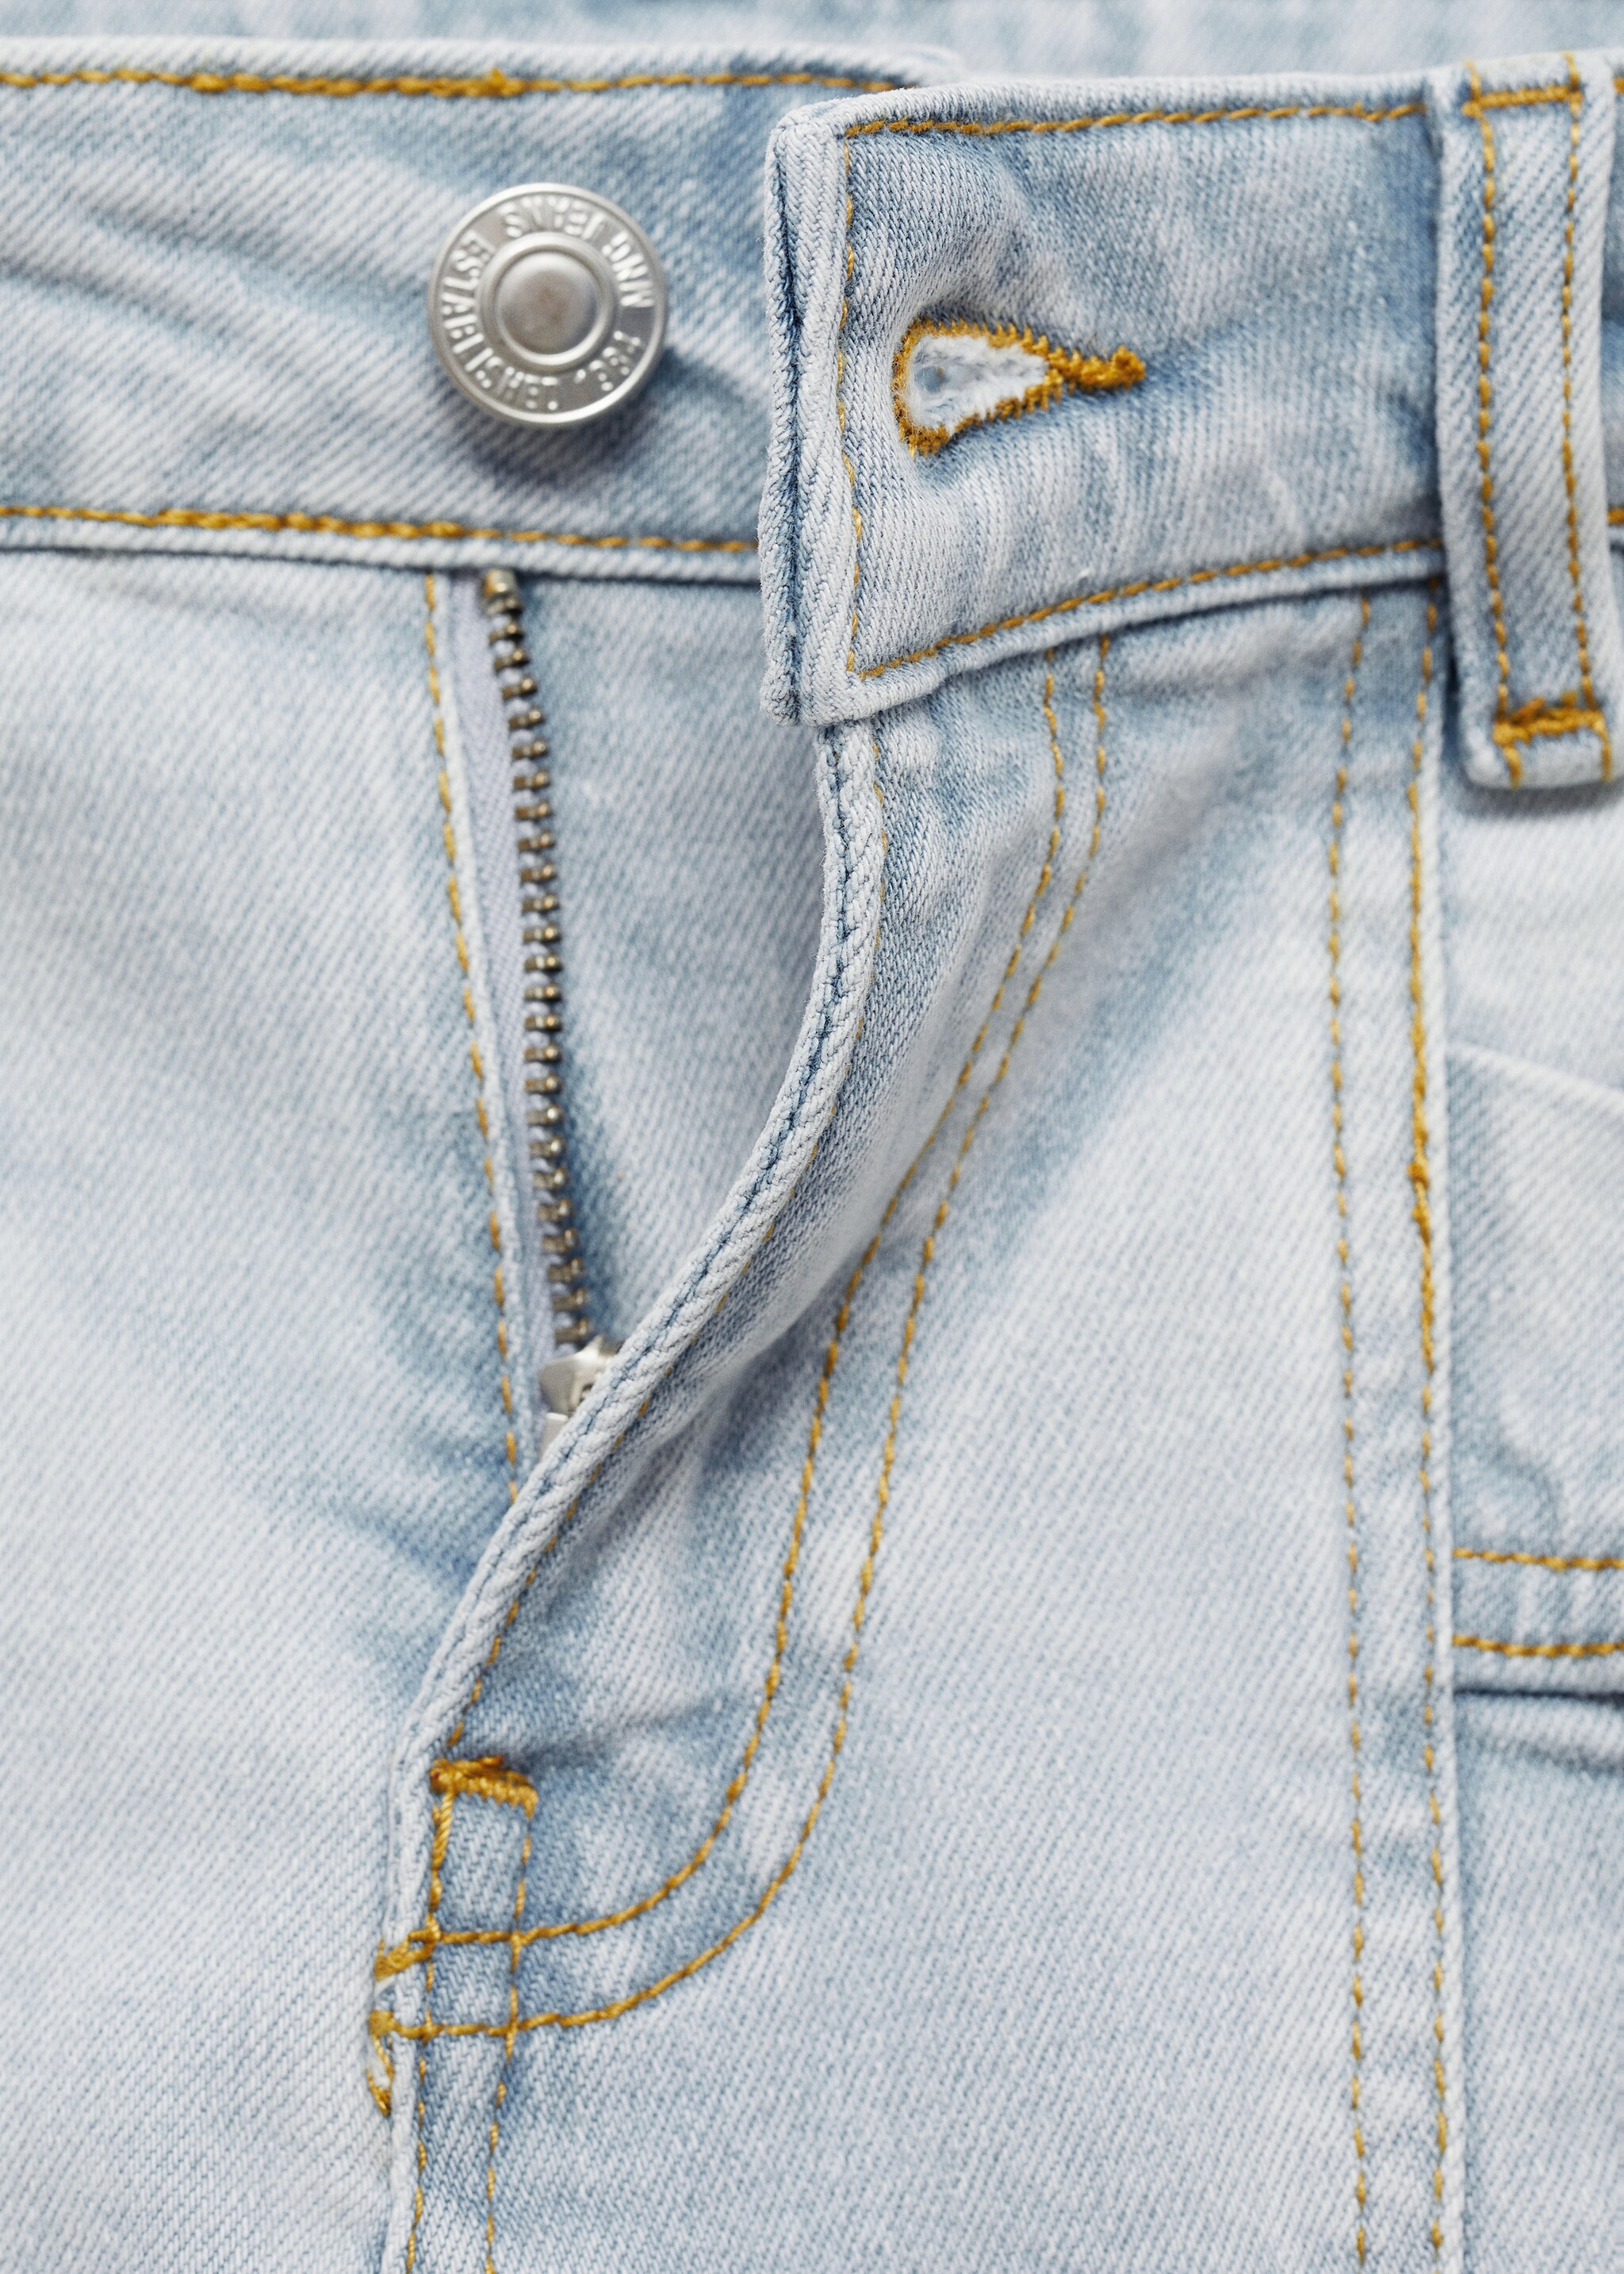 Прямые джинсы-капри - Деталь изделия 8